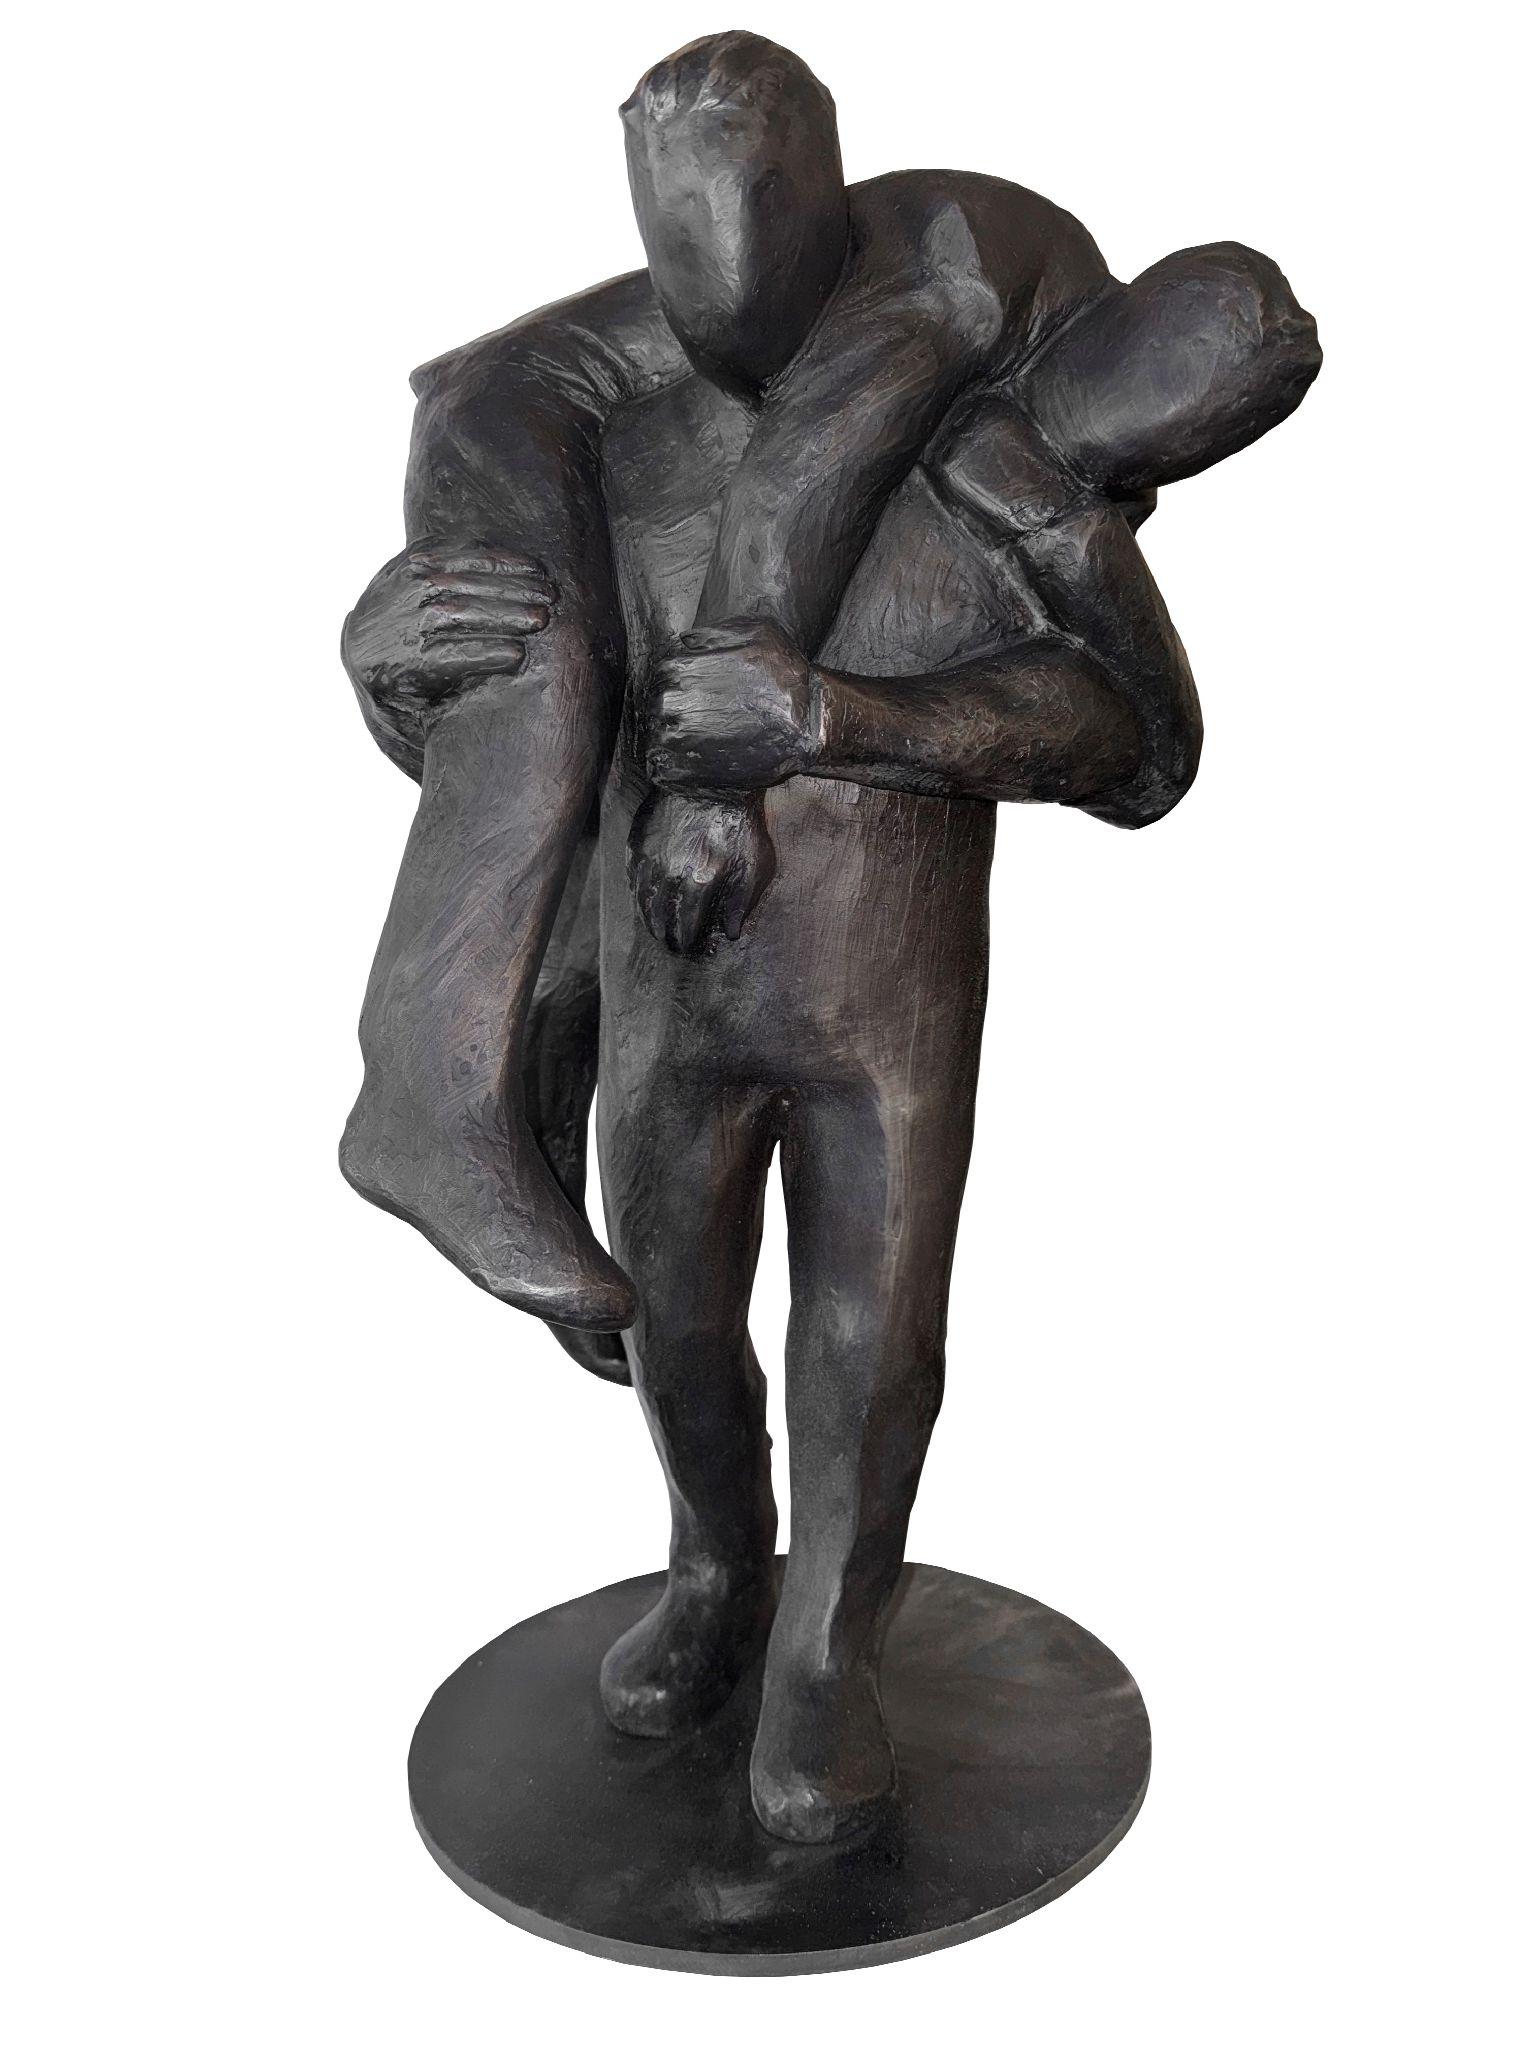 Jim Rennert Figurative Sculpture – Mentor